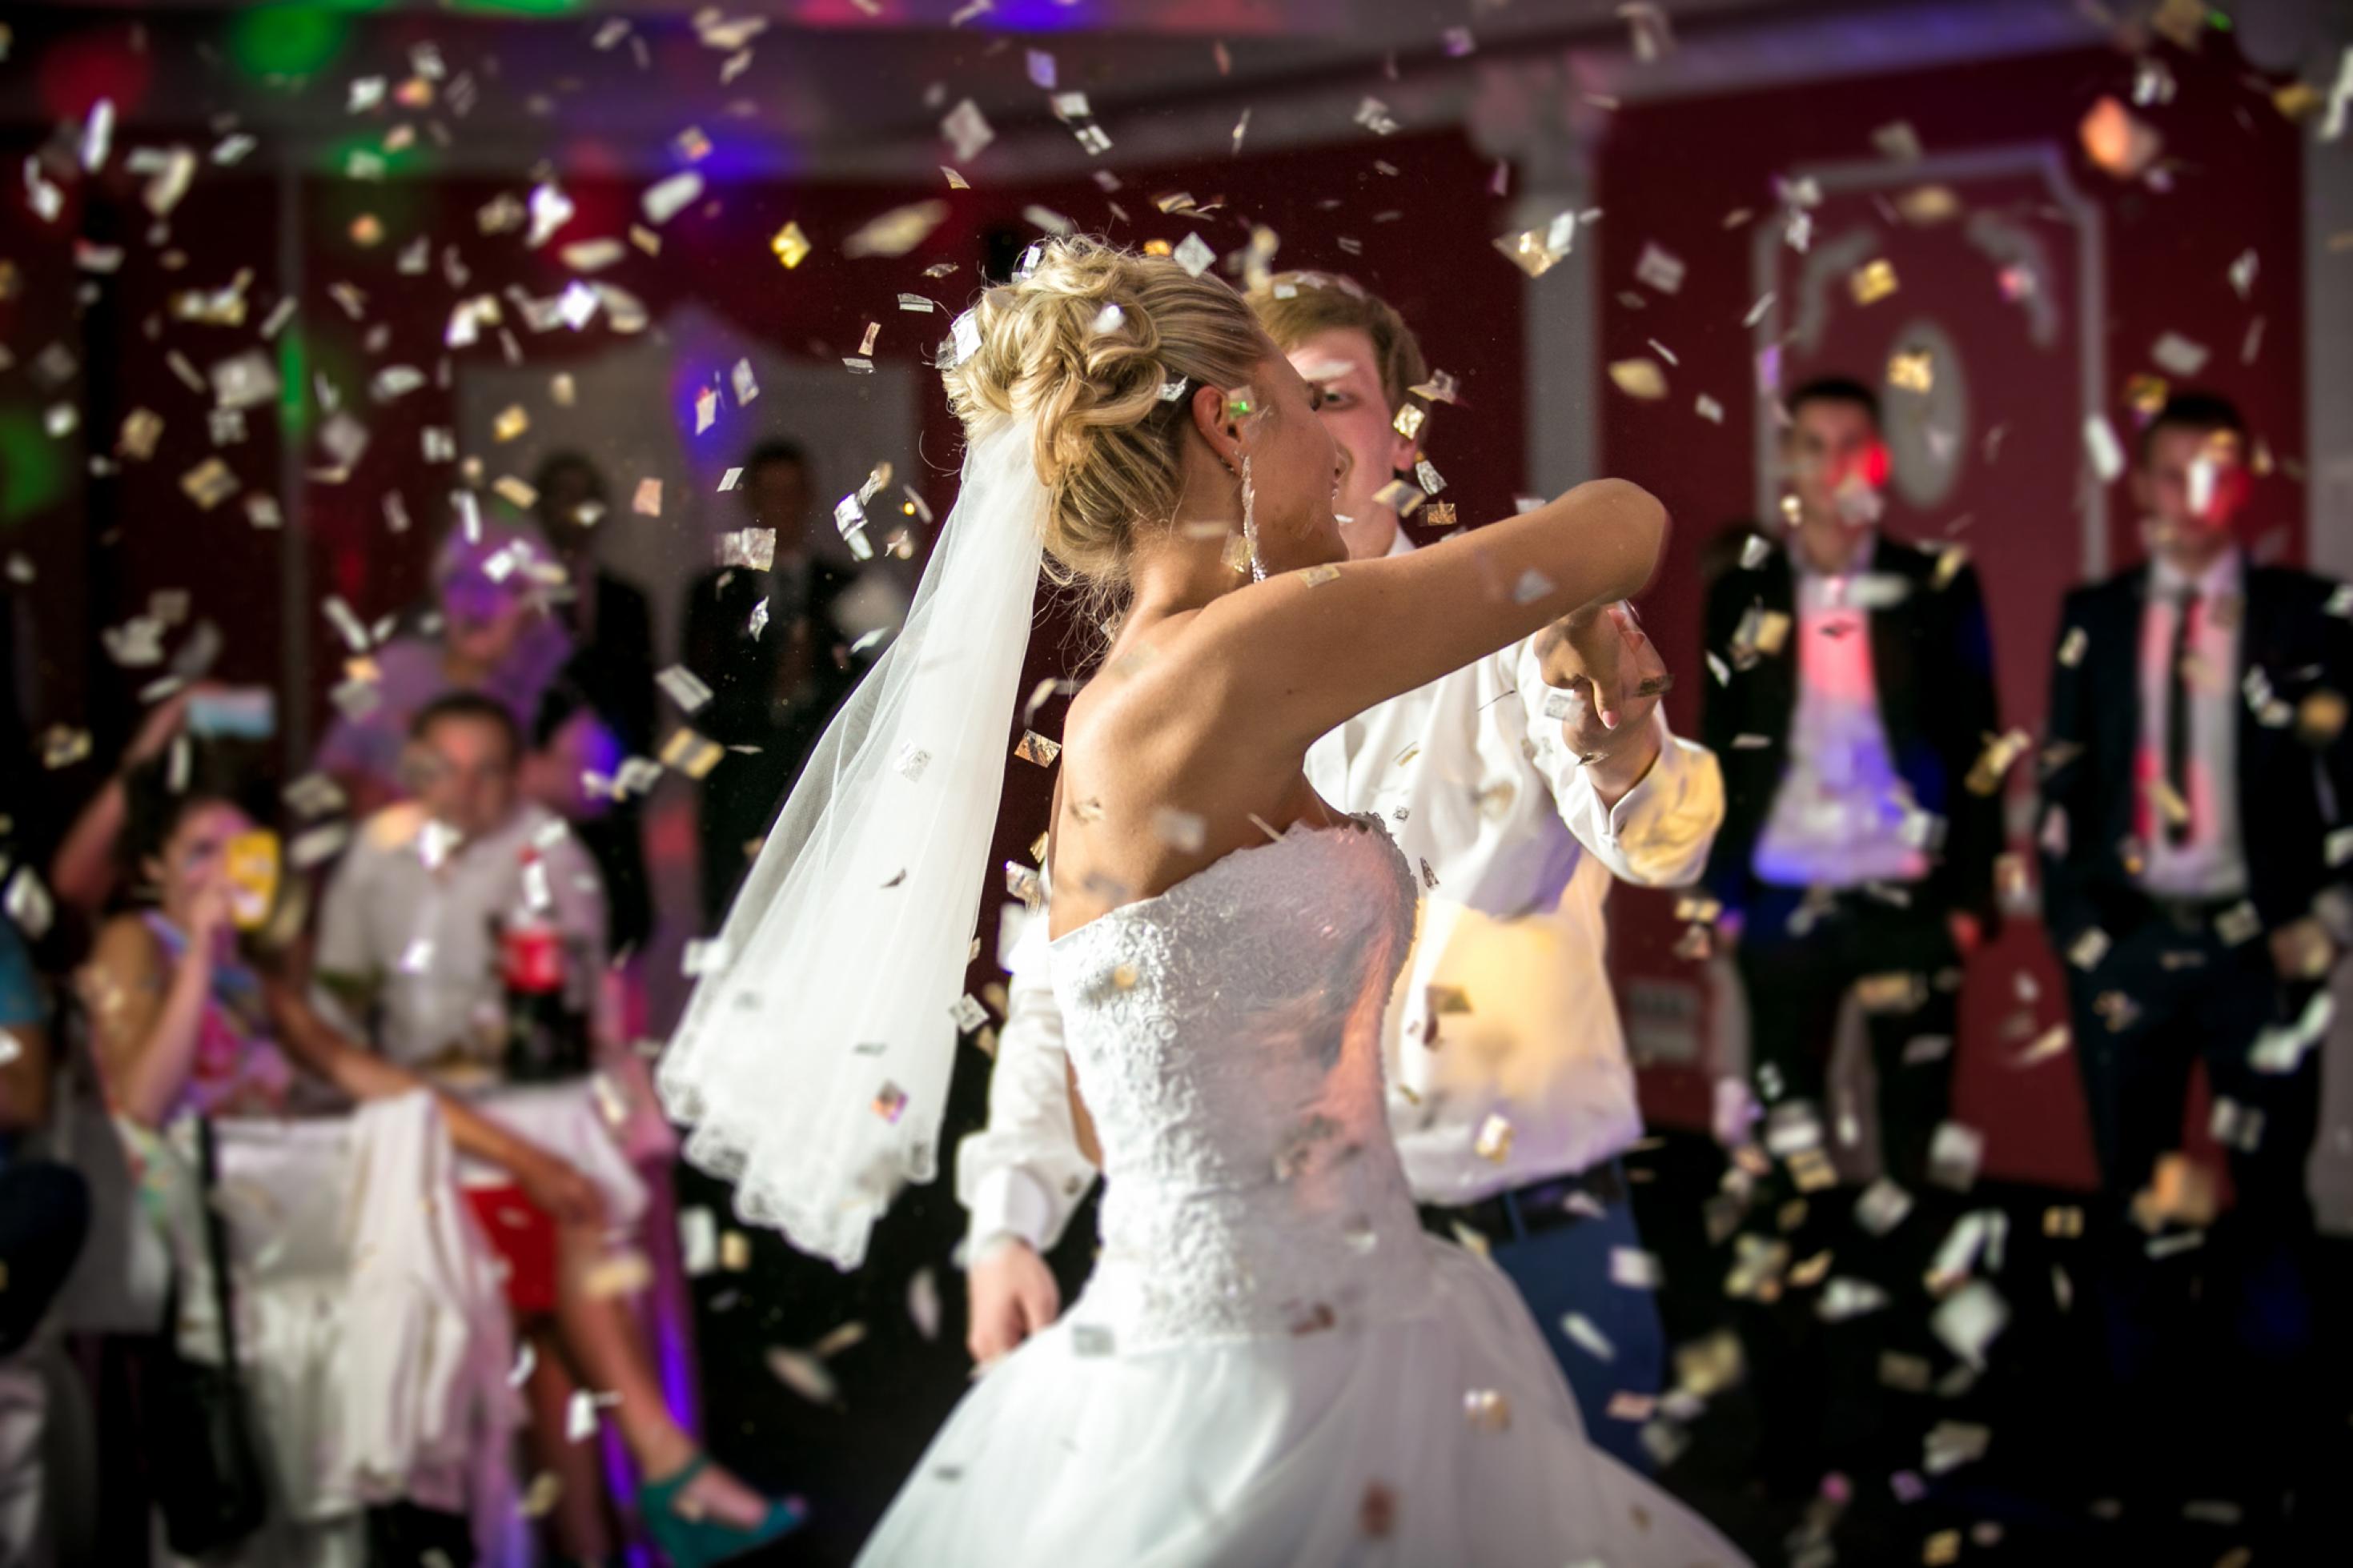 Eine Braut in weißem Kleid – Schulter und Oberarme frei, an den hochgesteckten blonden Haaren einen Schleier tragend – tanzt beschwingt mit ihrem Bräutigam, der großenteils von ihr verdeckt wird. Im Hintergrund unscharf und dunkel die zuschauenden Hochzeitsgäste und um das Paar herum ein von oben kommender Konfetti-Regen.